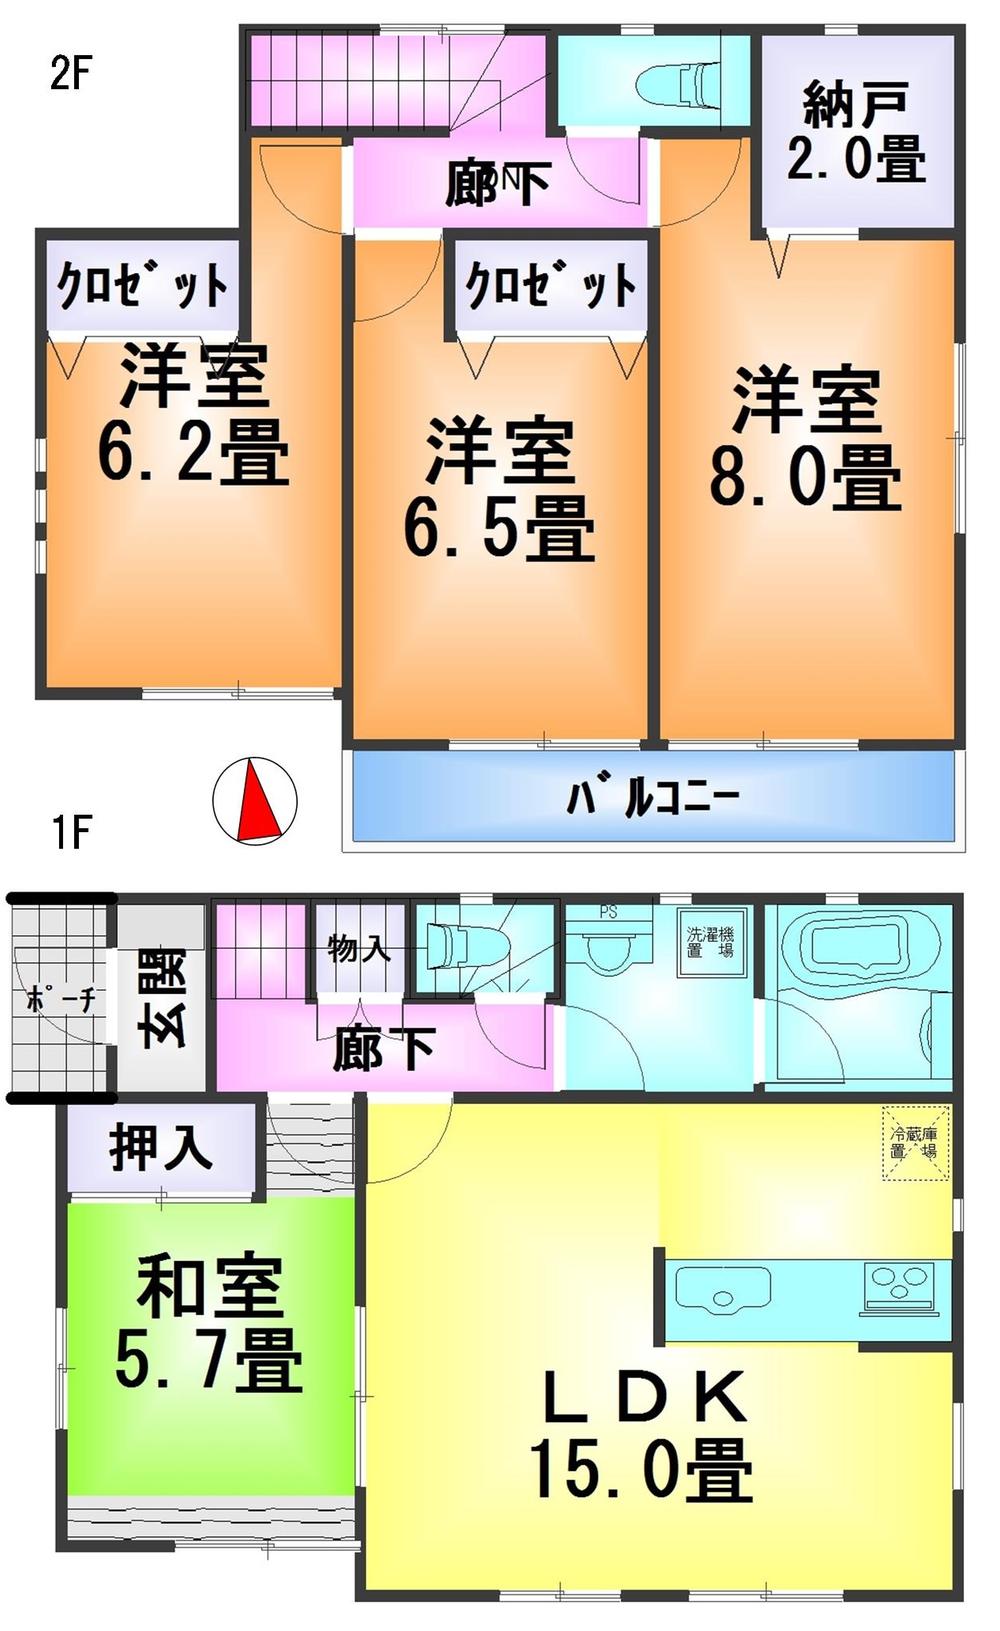 Floor plan. 18,800,000 yen, 4LDK + S (storeroom), Land area 256.32 sq m , Building area 95.17 sq m